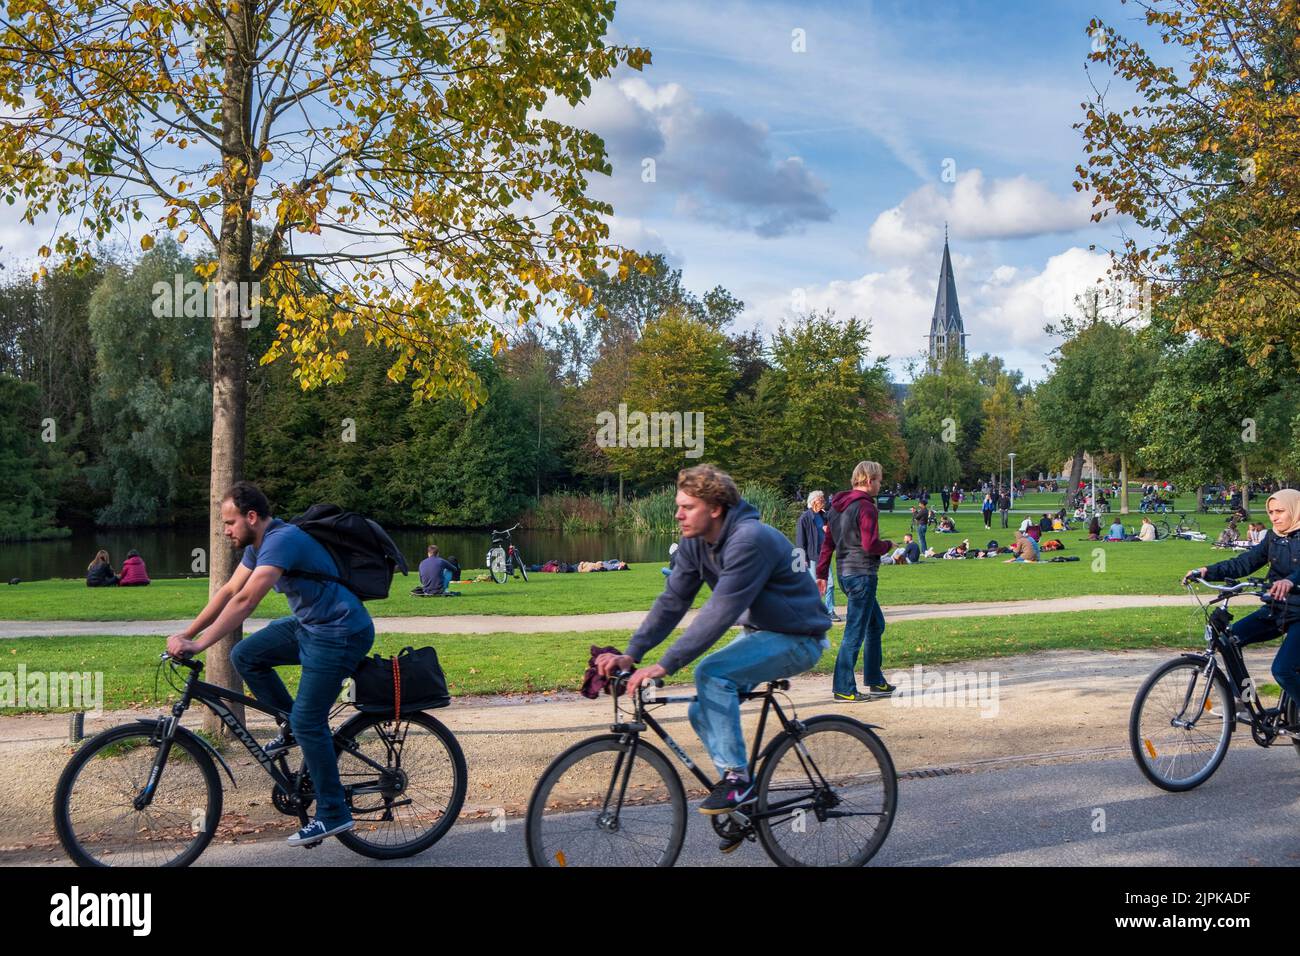 Le Vondelpark, un parc urbain public de 47 hectares, Amsterdam, pays-Bas. Banque D'Images